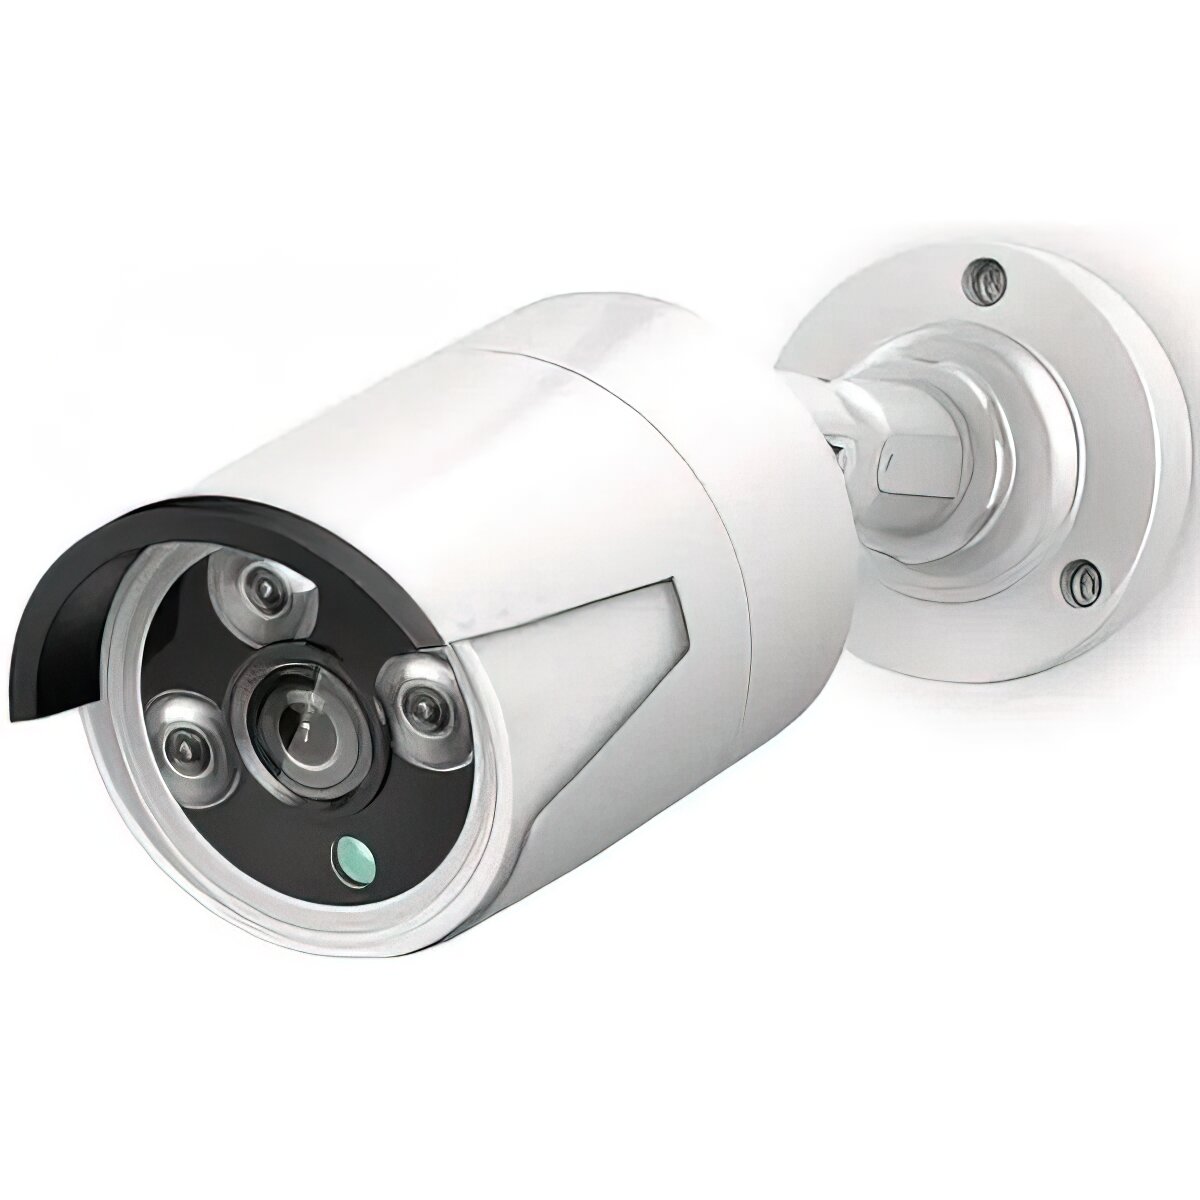 Цифровой IP POE комплект видеонаблюдения на 8 камер 4Mp со звуком MiCam KIT-8213 система видеонаблюдения для улицы и помещений